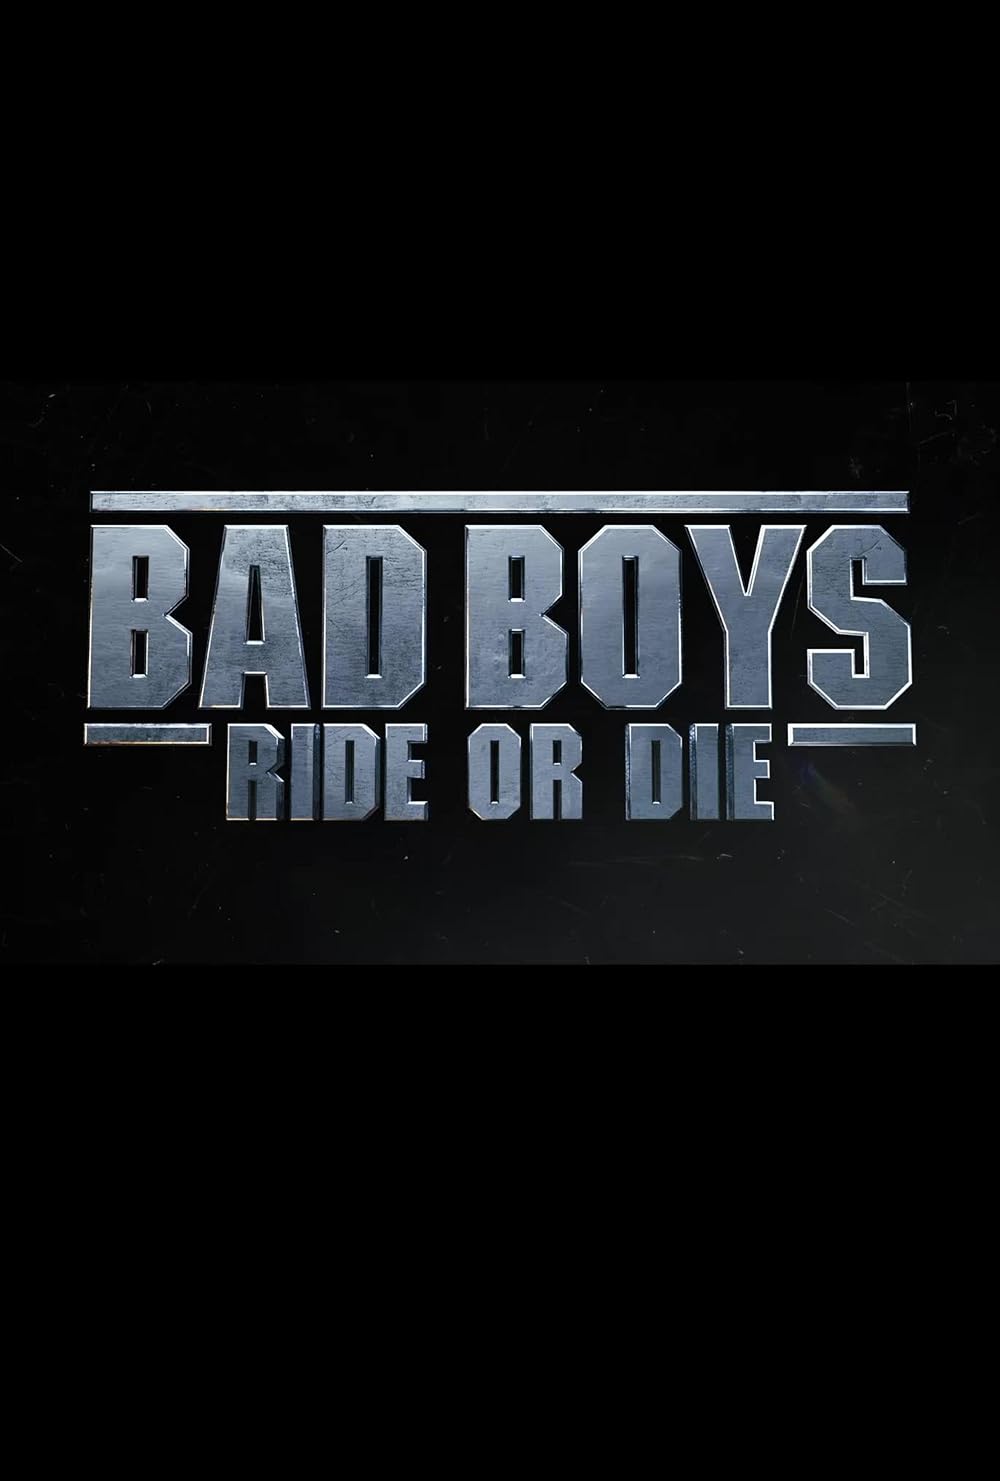 Bad Boys: Ride or Die (IMAX)